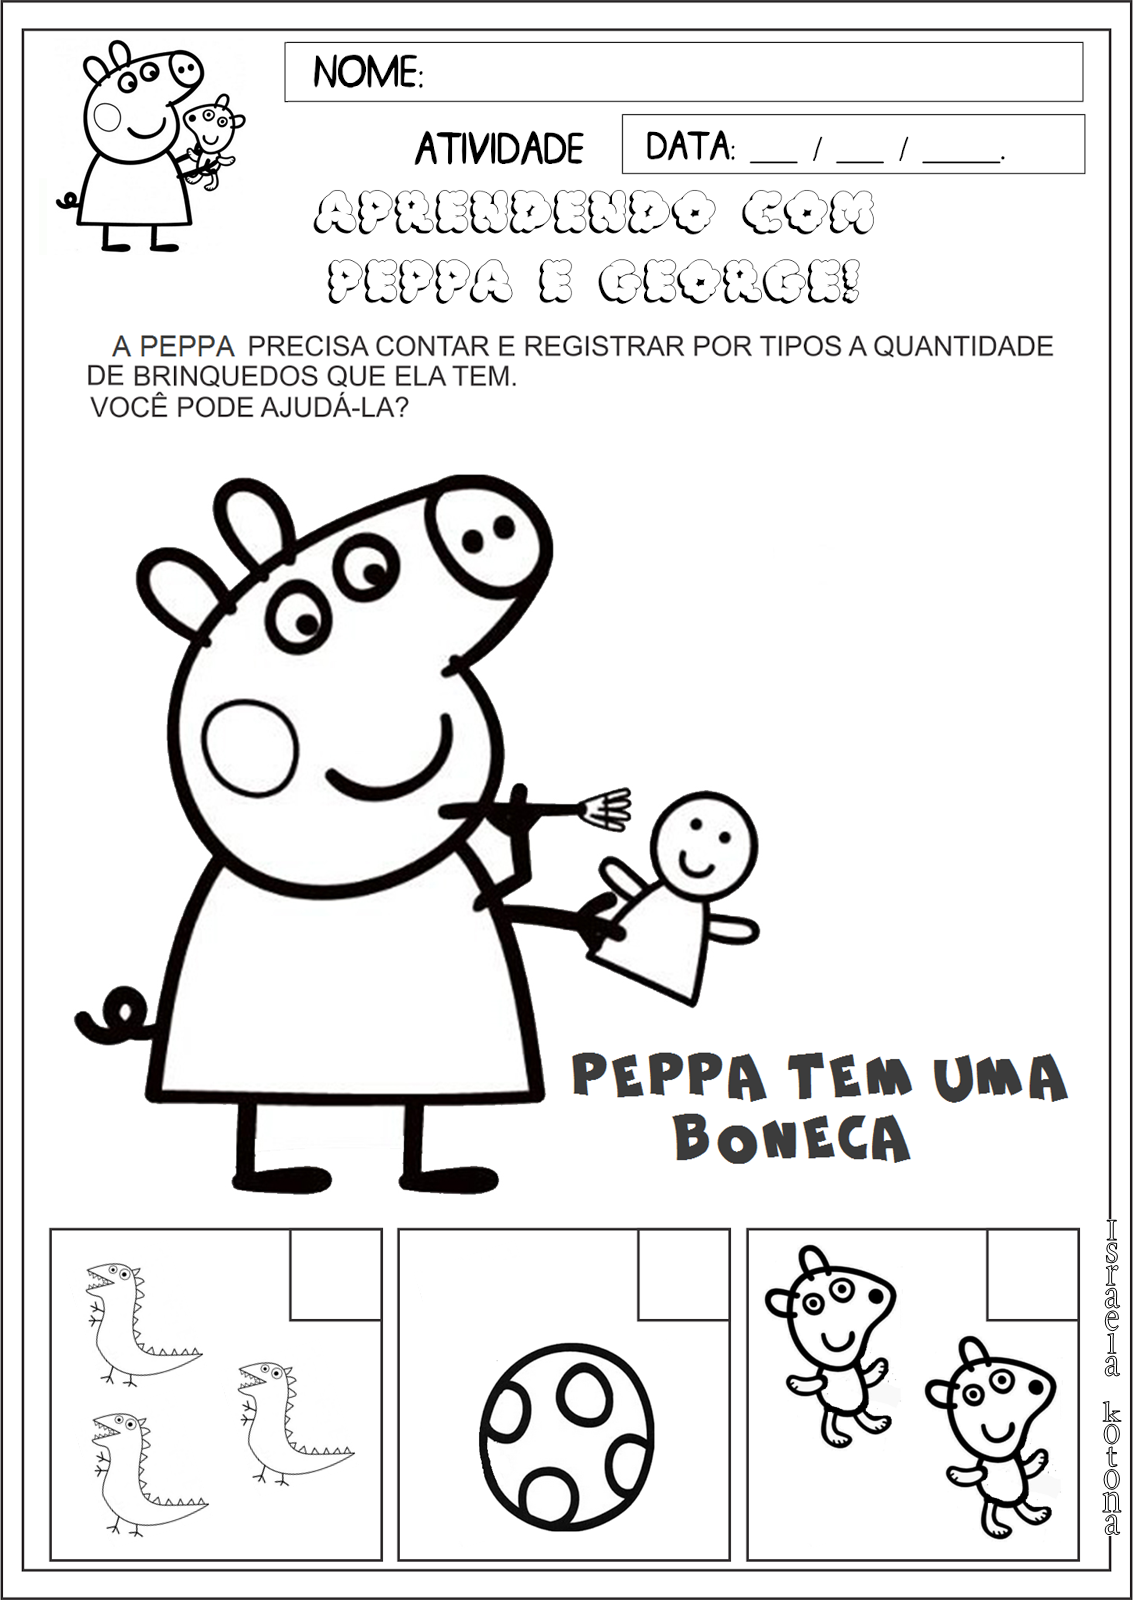 Peppa Pig: Fichas para colorir e descobrir as diferenças - Centroxogo Blog